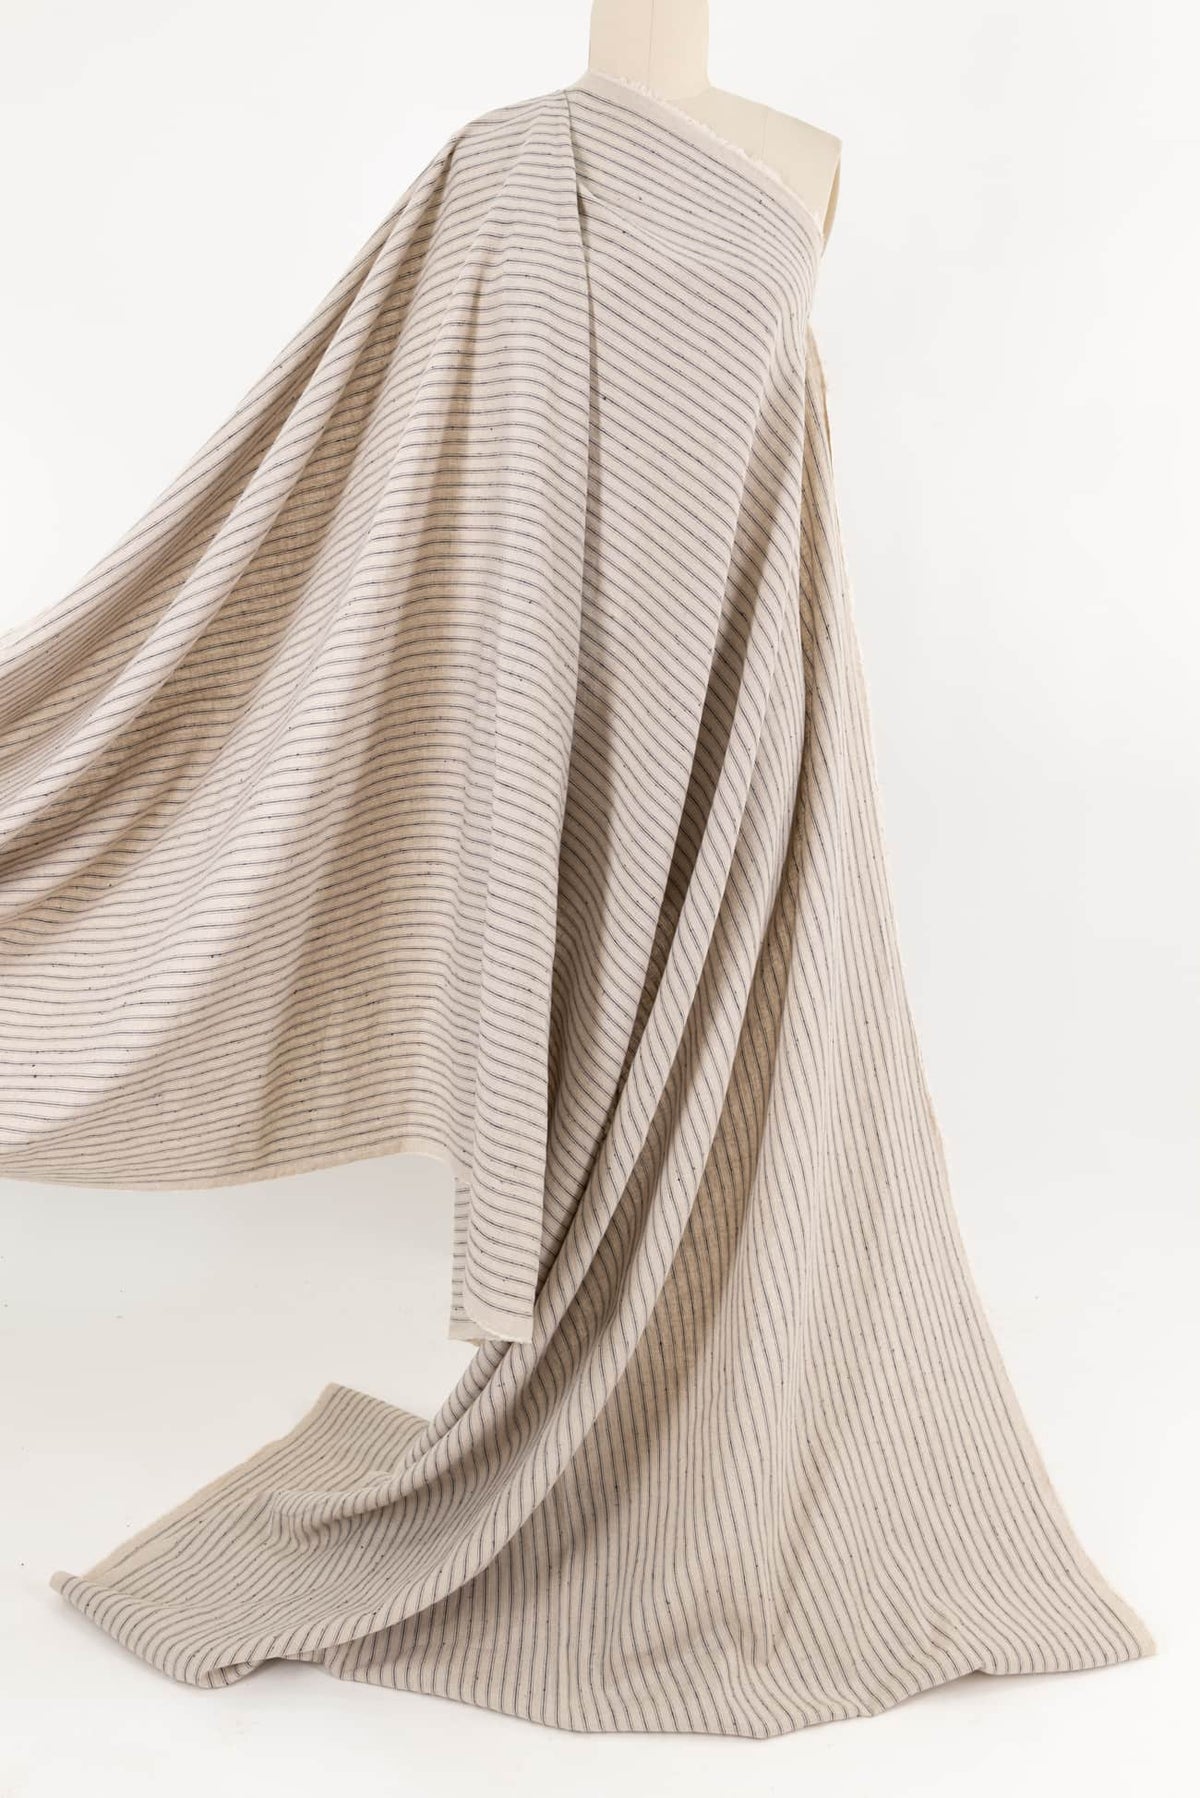 Gray Ticking Stripes Cotton Woven - Marcy Tilton Fabrics